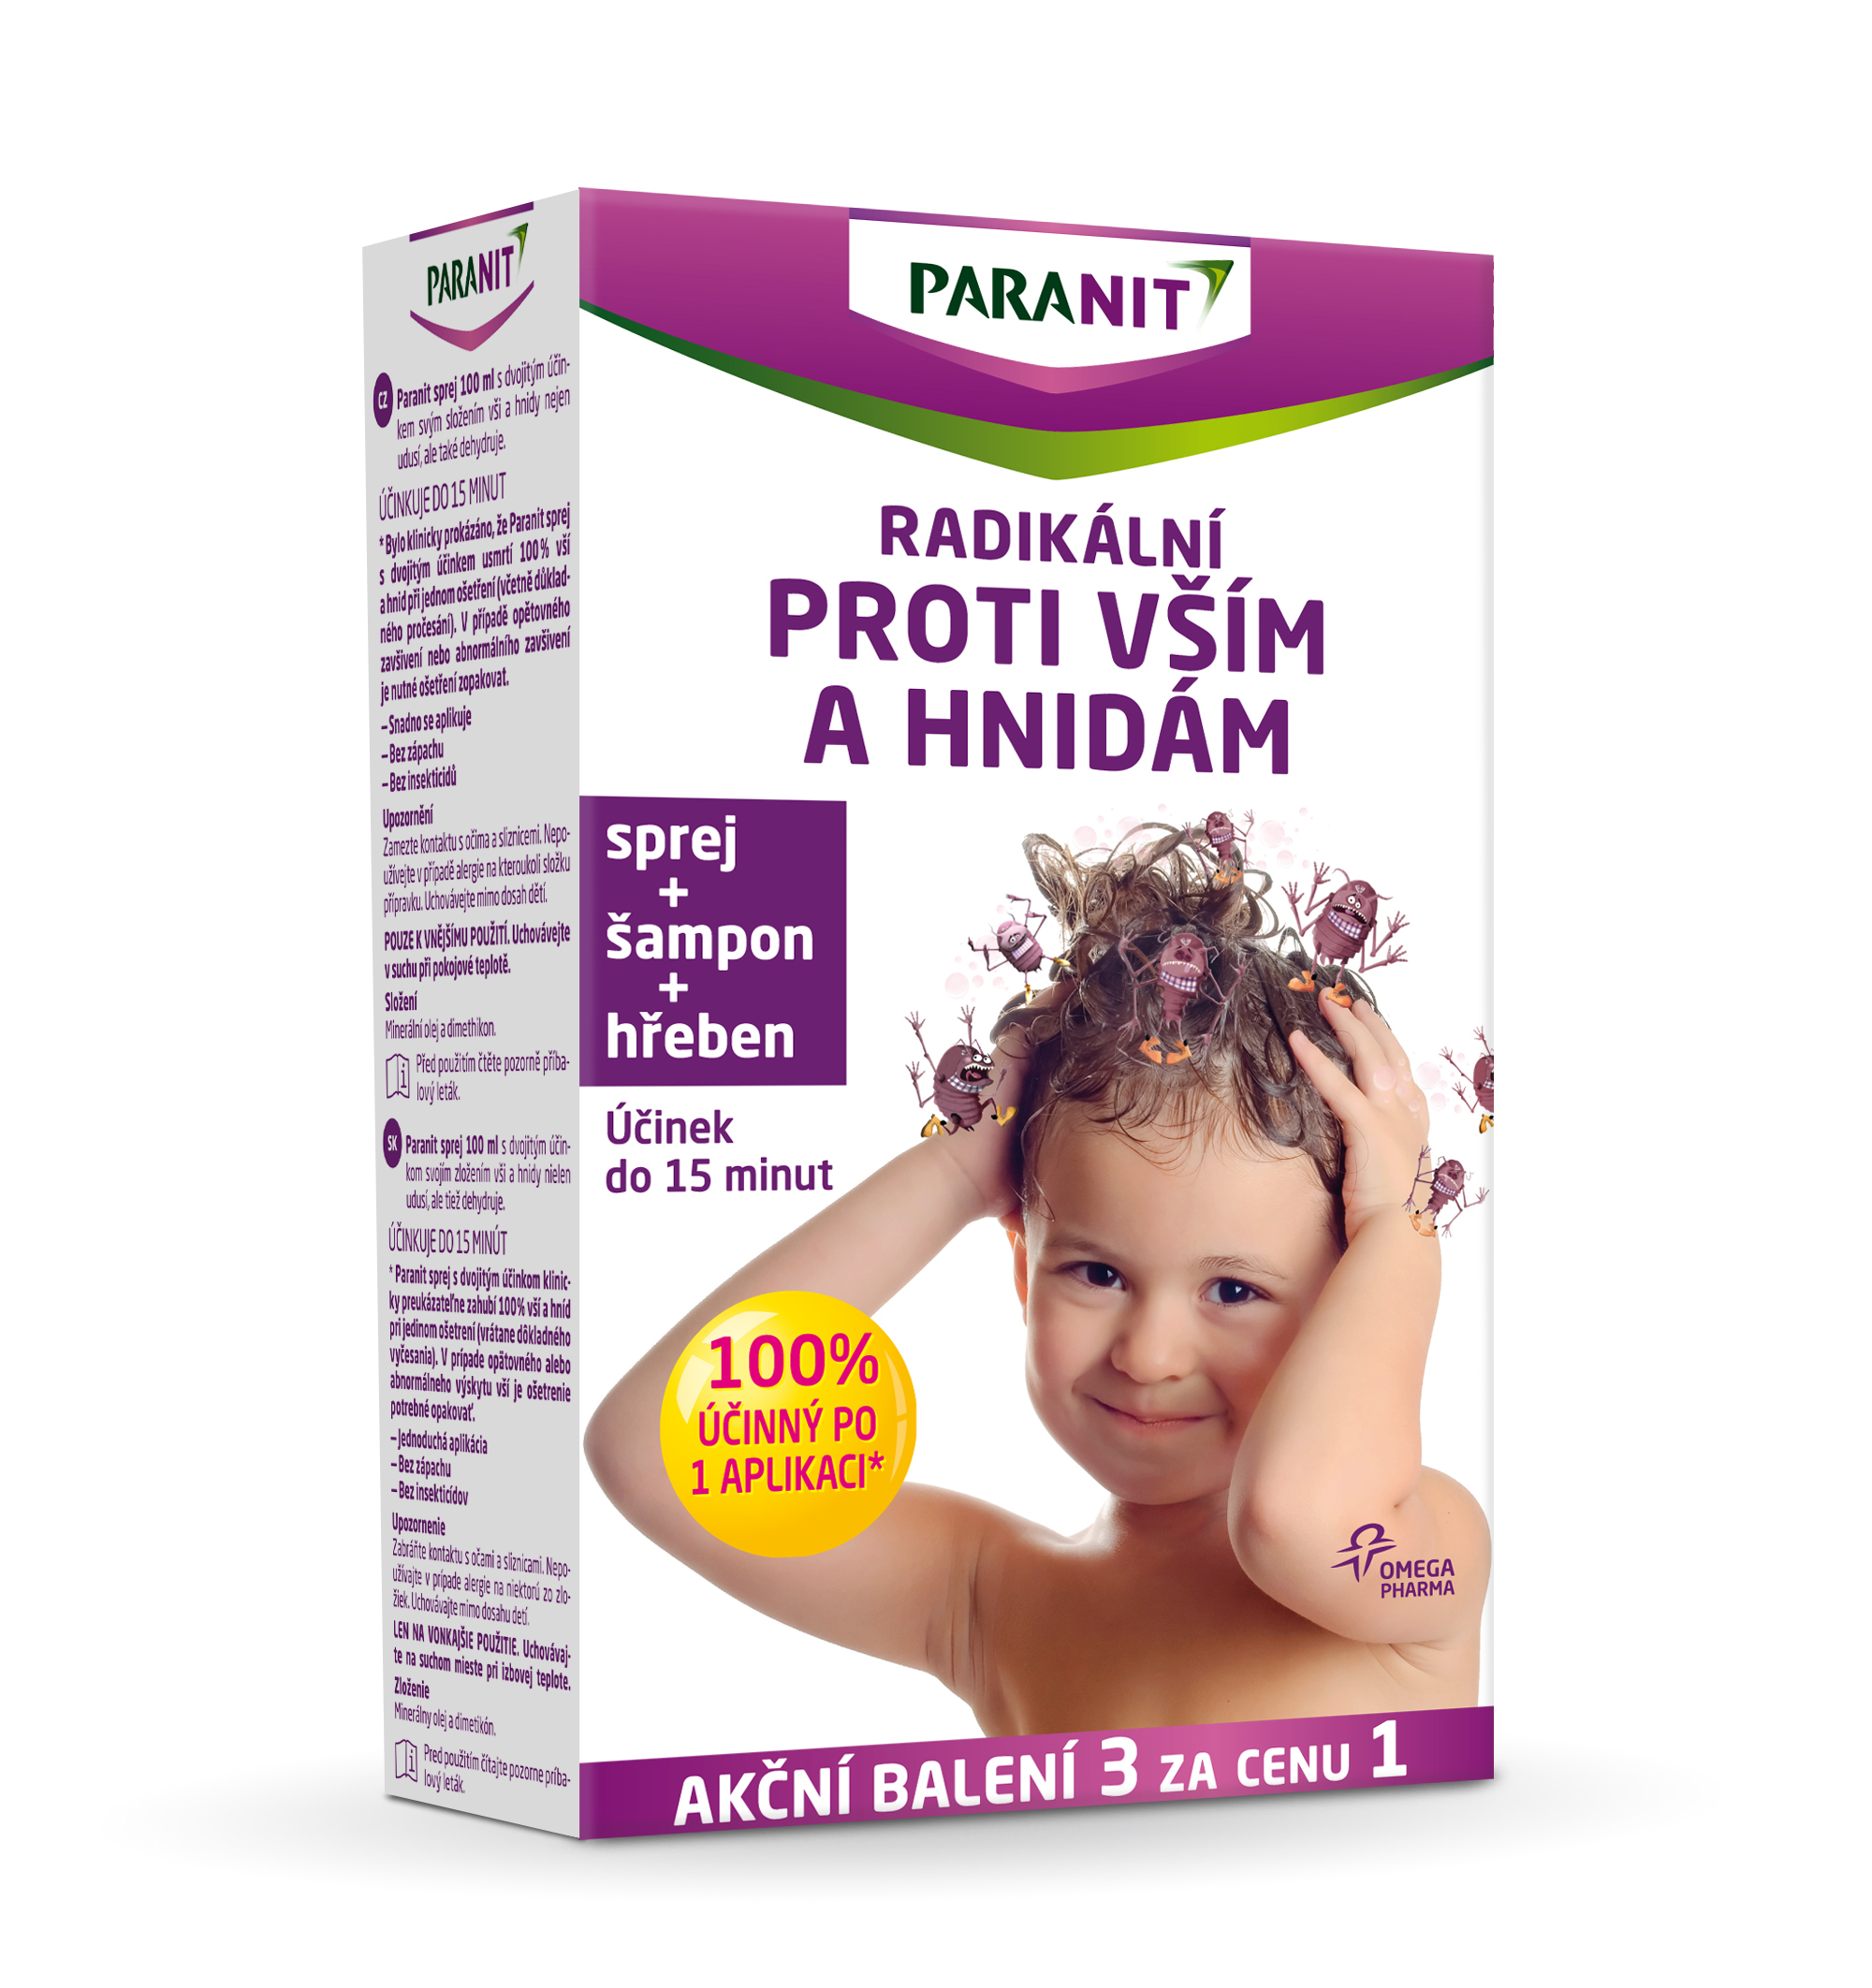 Paranit Radikální sprej 100 ml + hřeben + šampon 100ml ZDARMA Paranit